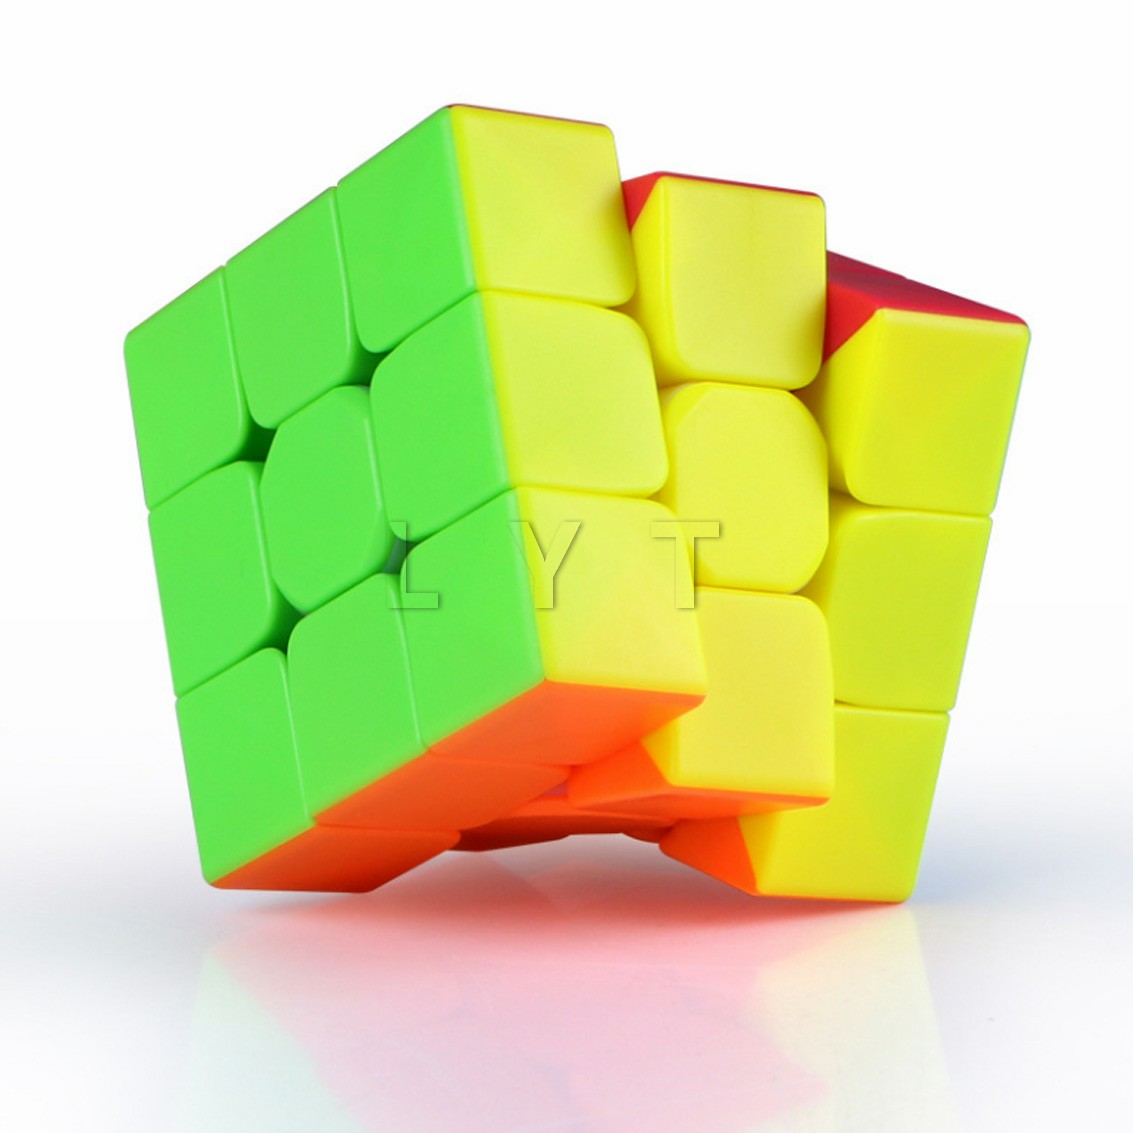 รูบิค  3x3x3 ความเร็วระดับมืออาชีพ รูบิค ลูกบาศก์ ของเล่นลับสมอง หมุนง่าย ลื่นมือ ไม่ติดขัด Twist Puzzle Rubik's Cube & MF3RS Racing Cube